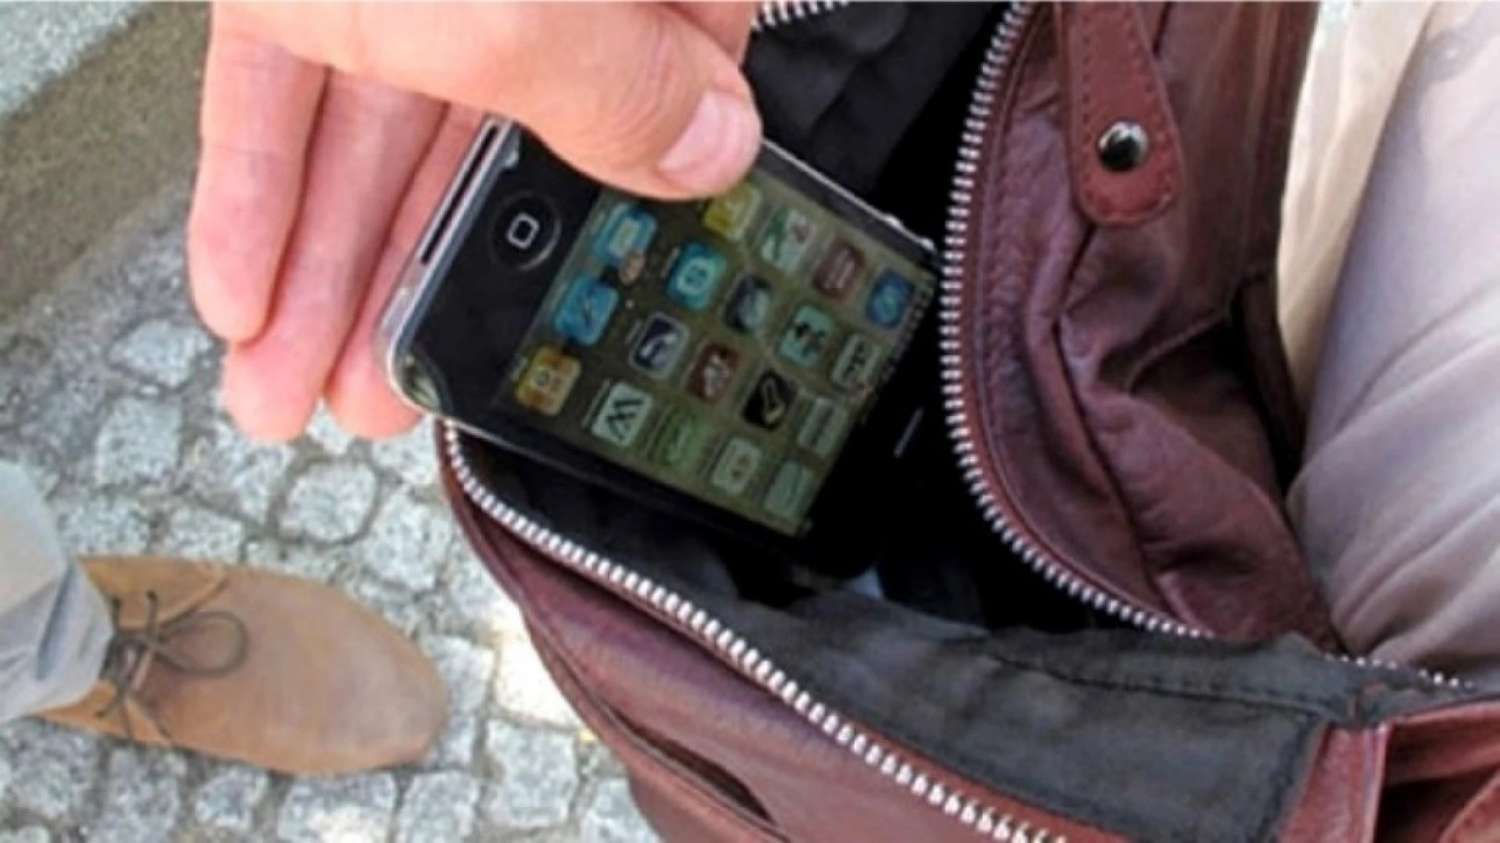 Le robaron el celular a una periodista sanjuanina cuando viajaba en colectivo